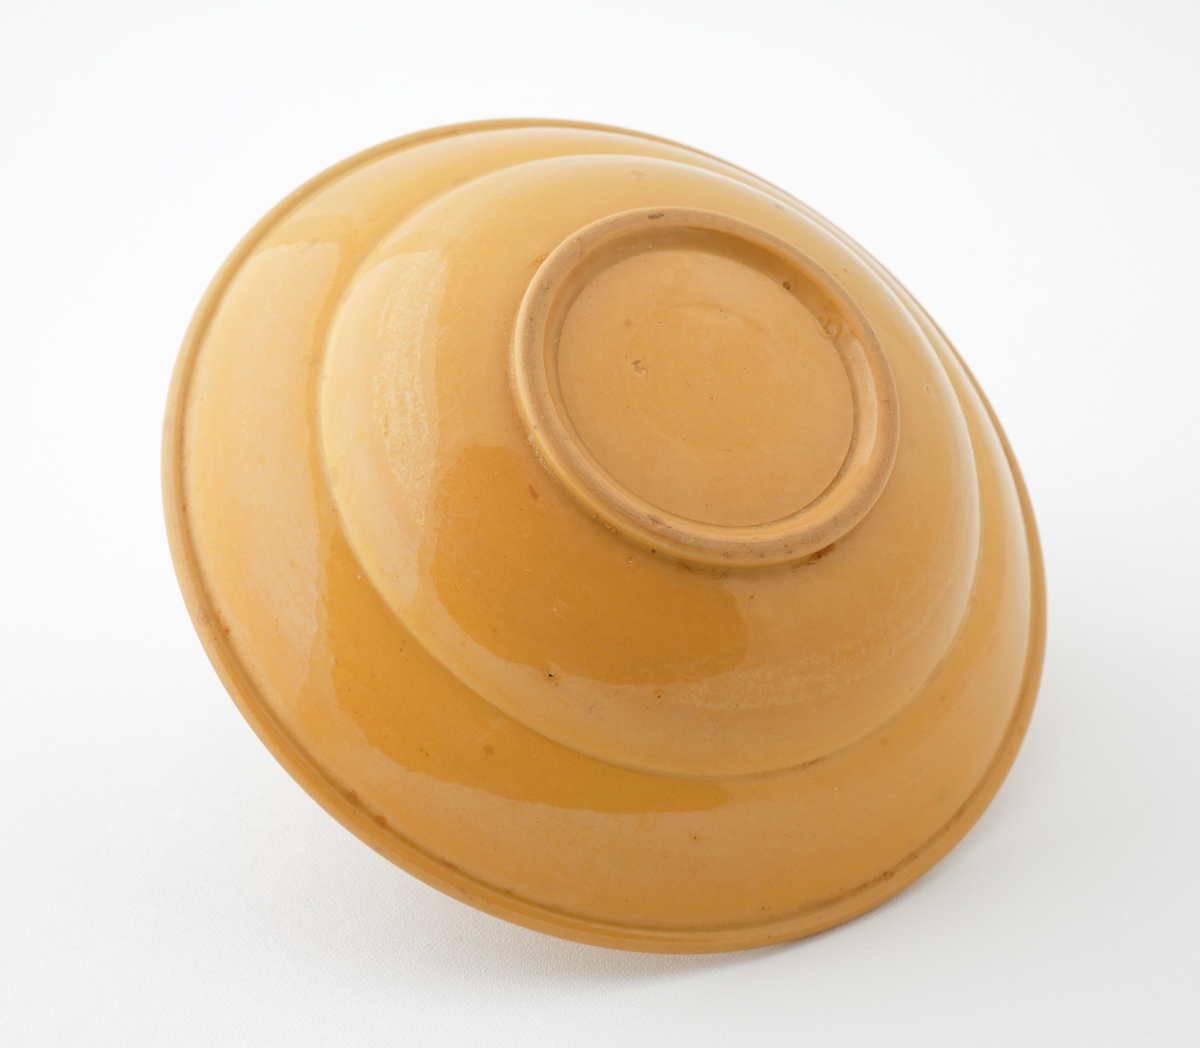 Skål i glaserad keramik.
Rund skål med honungsgul glasyr, försedd med invändig dekorrand (fjäderformationer) i brunt och två gröna ränder i rinningsglasyr. I botten en cirkelrund grön rand.